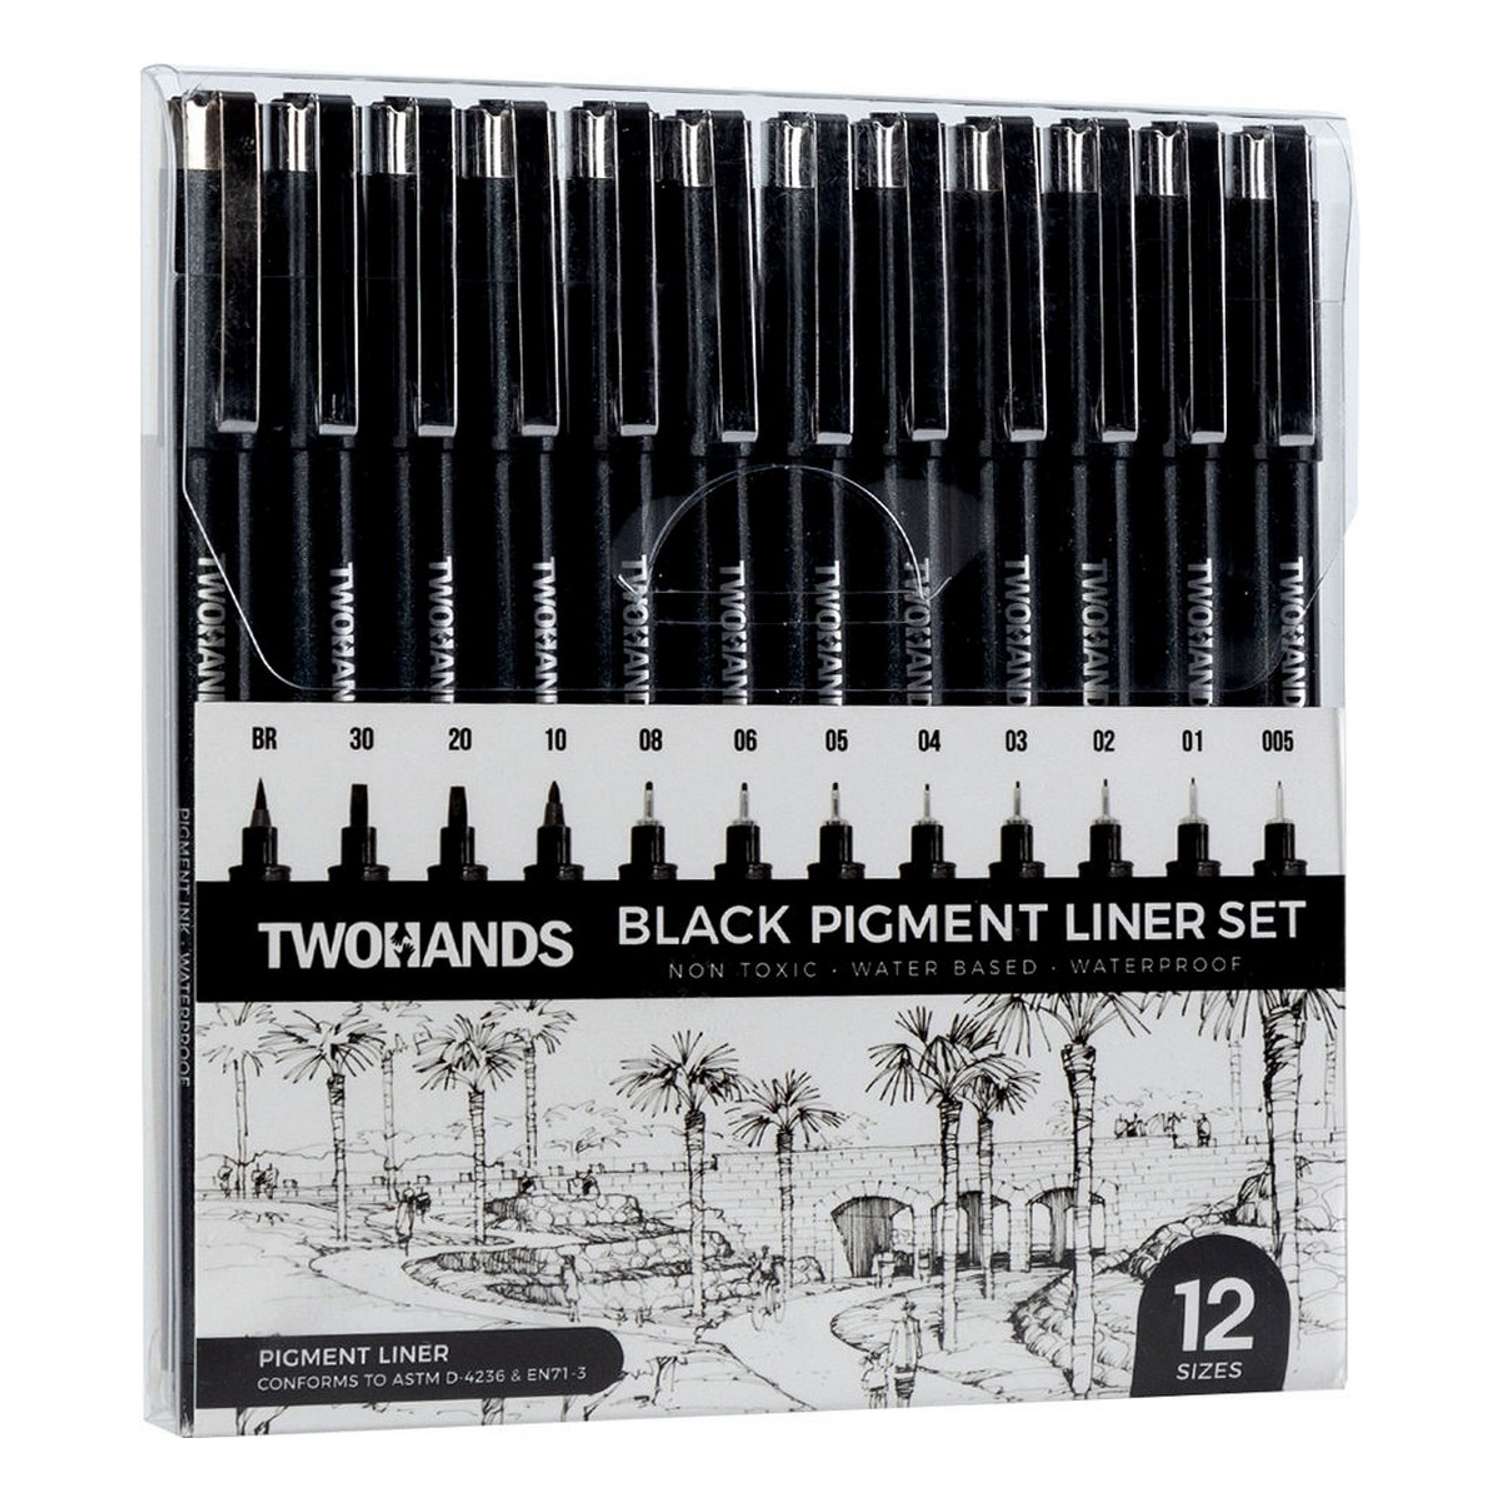 Пигментные линеры TWOHANDS набор черных 12 толщин линии. 12 шт в пластиковом футляре - фото 2